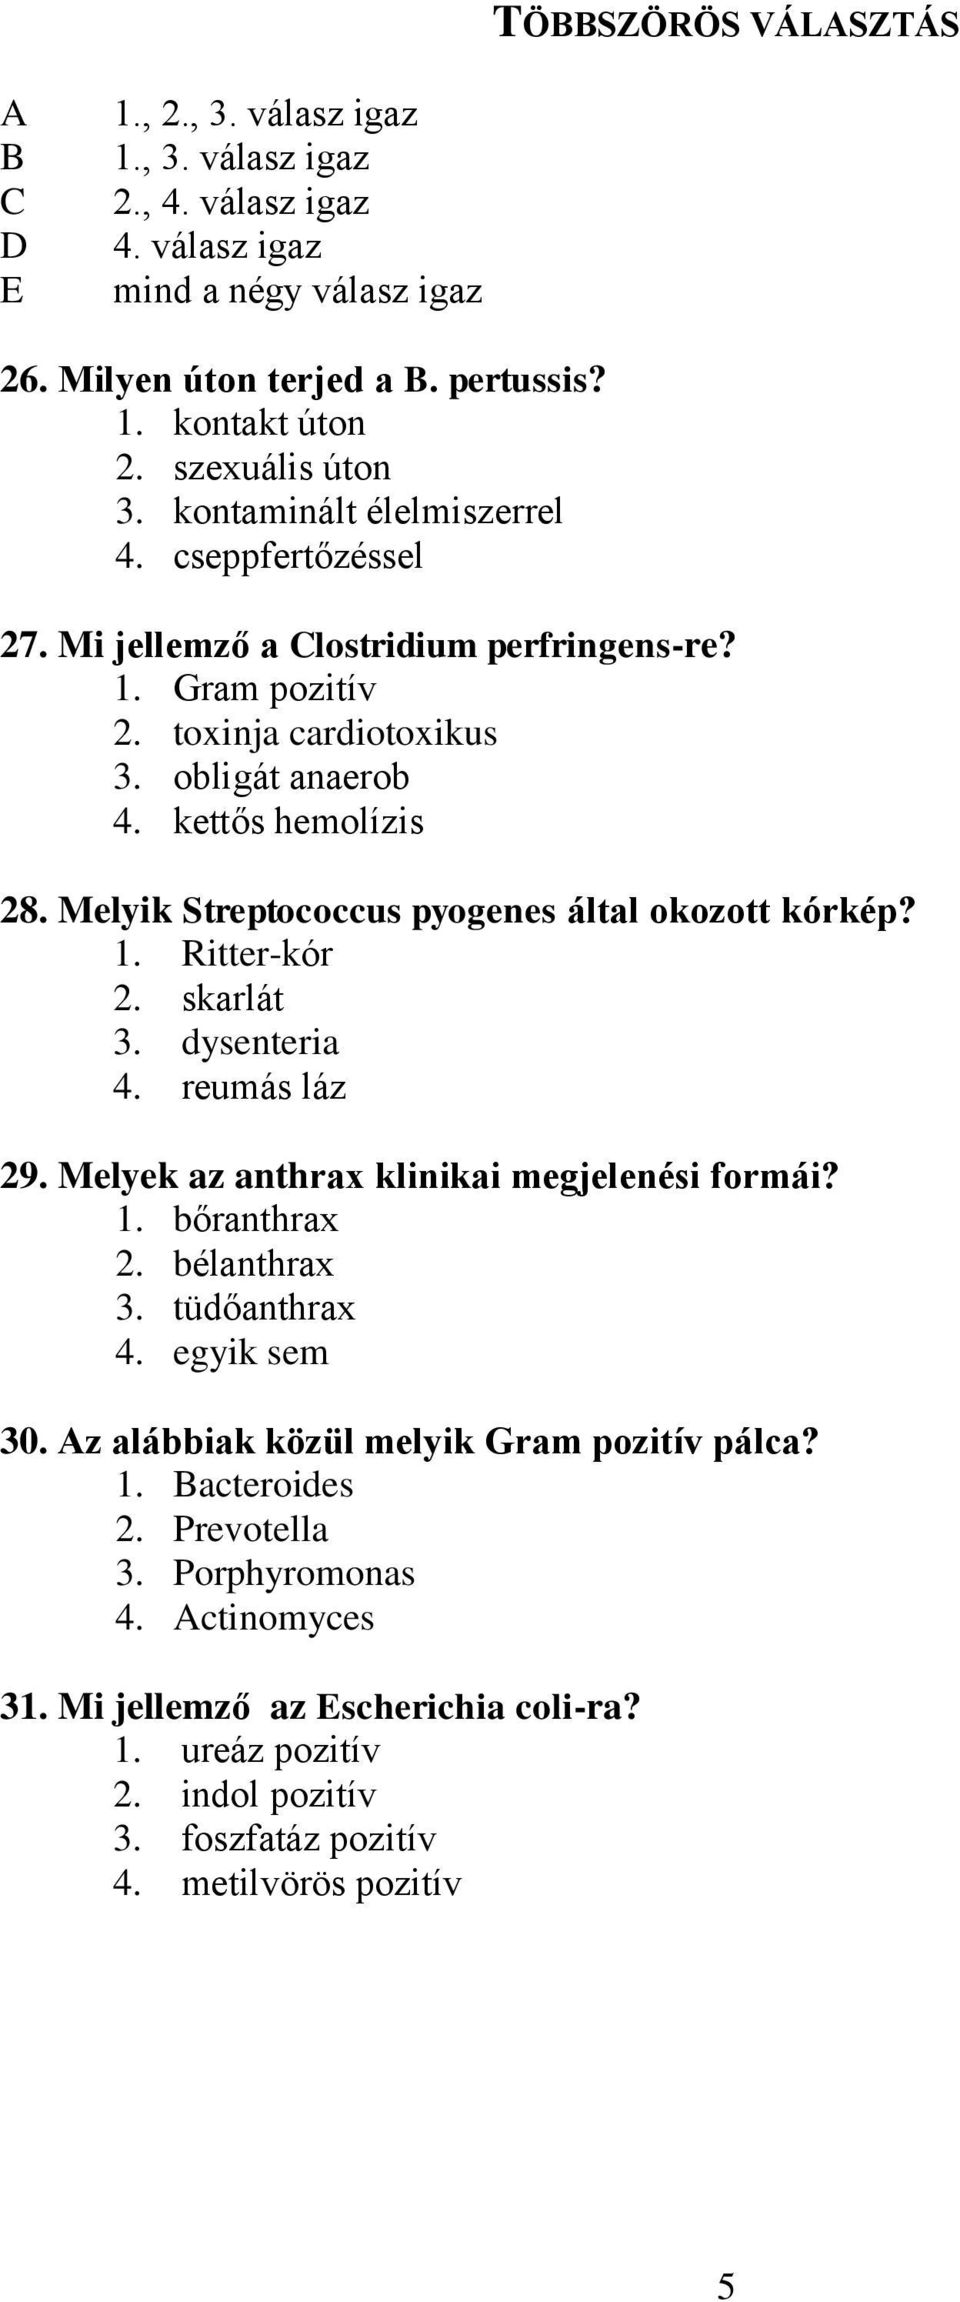 Melyik Streptococcus pyogenes által okozott kórkép? 1. Ritter-kór 2. skarlát 3. dysenteria 4. reumás láz 29. Melyek az anthrax klinikai megjelenési formái? 1. bőranthrax 2. bélanthrax 3.